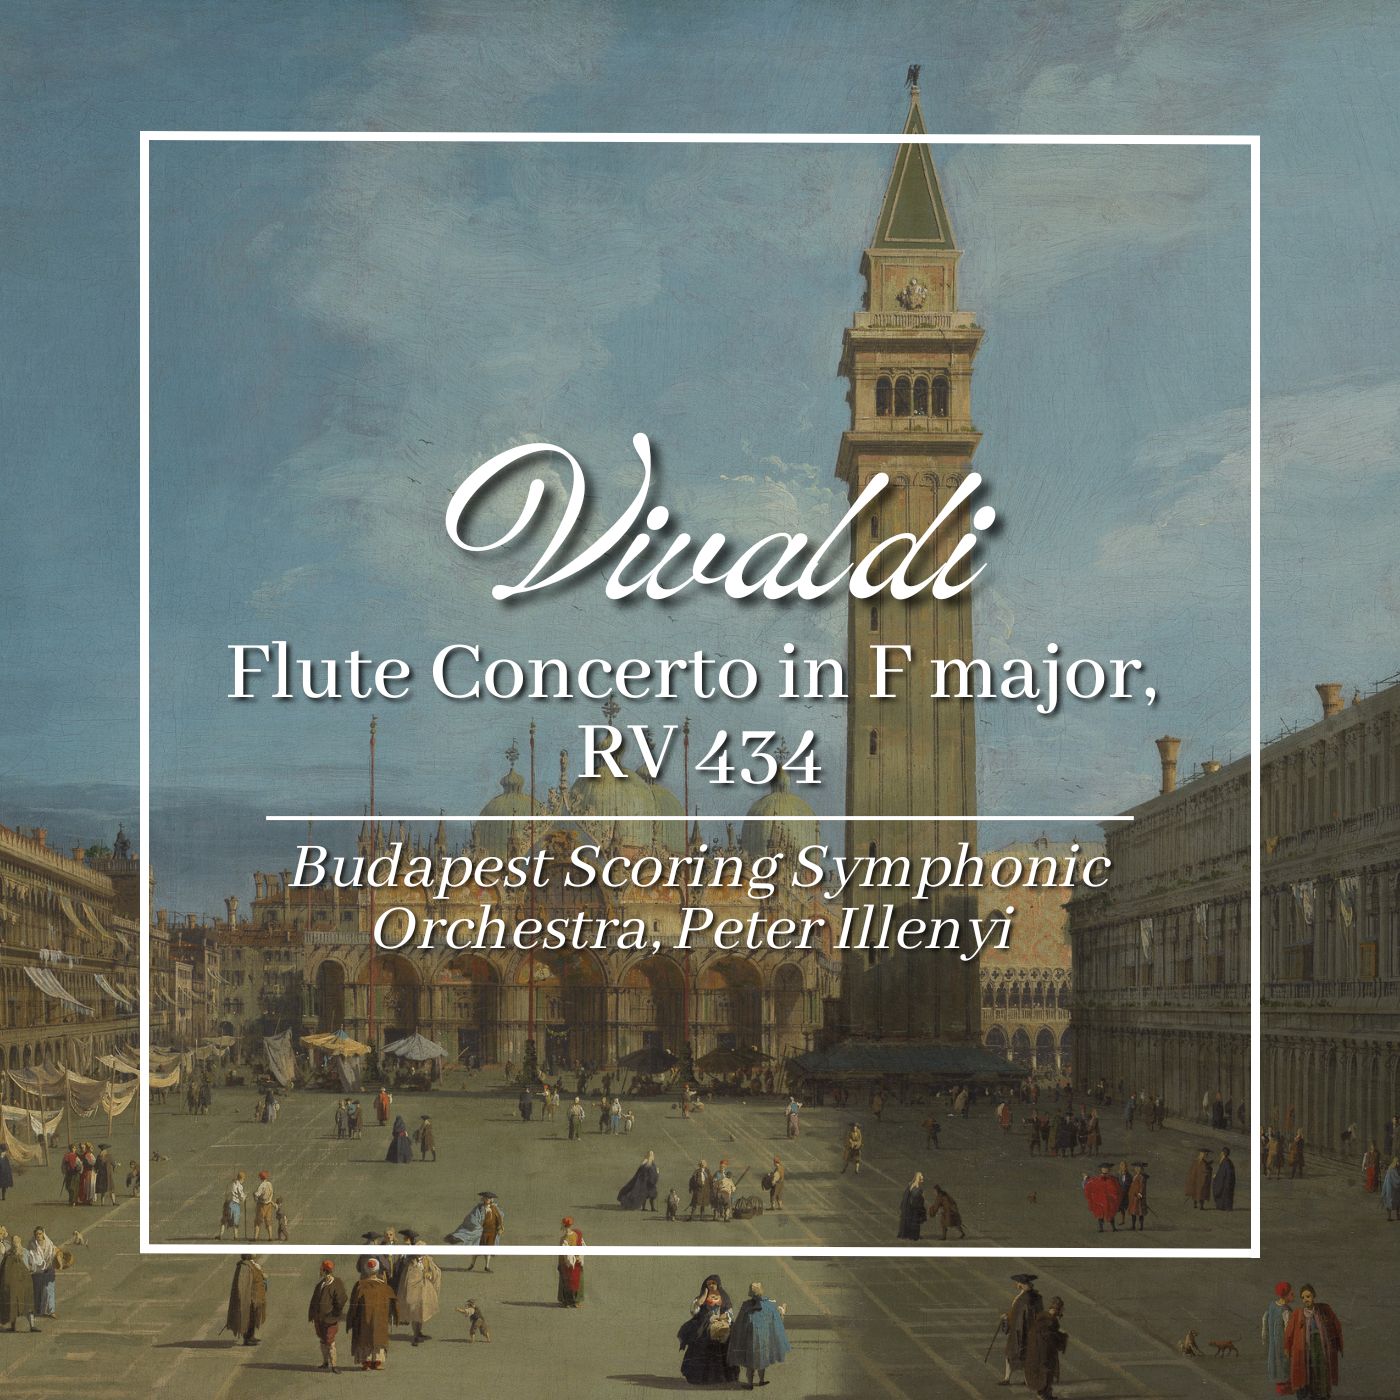 Vivaldi: Flute Concerto in F major, RV 434